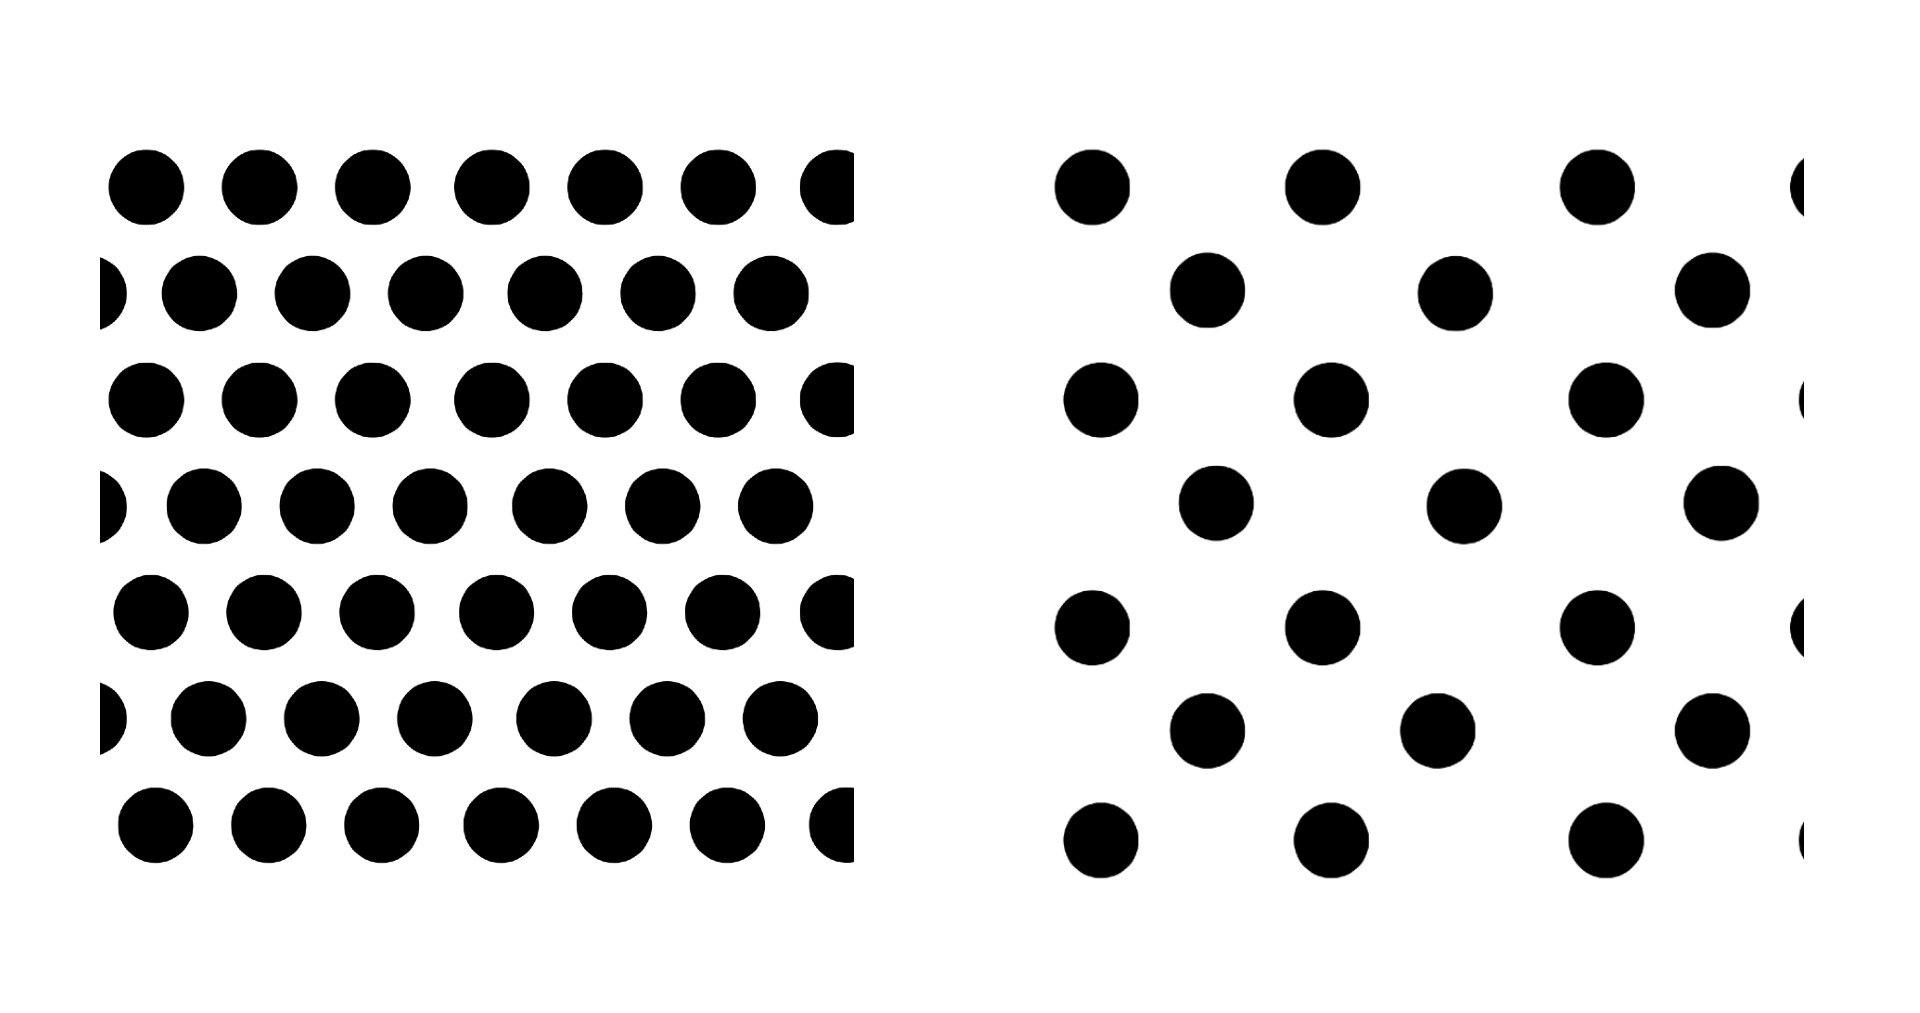 排列密集的圓點圖案（左圖）、排列鬆散的圓點圖案（右圖）。